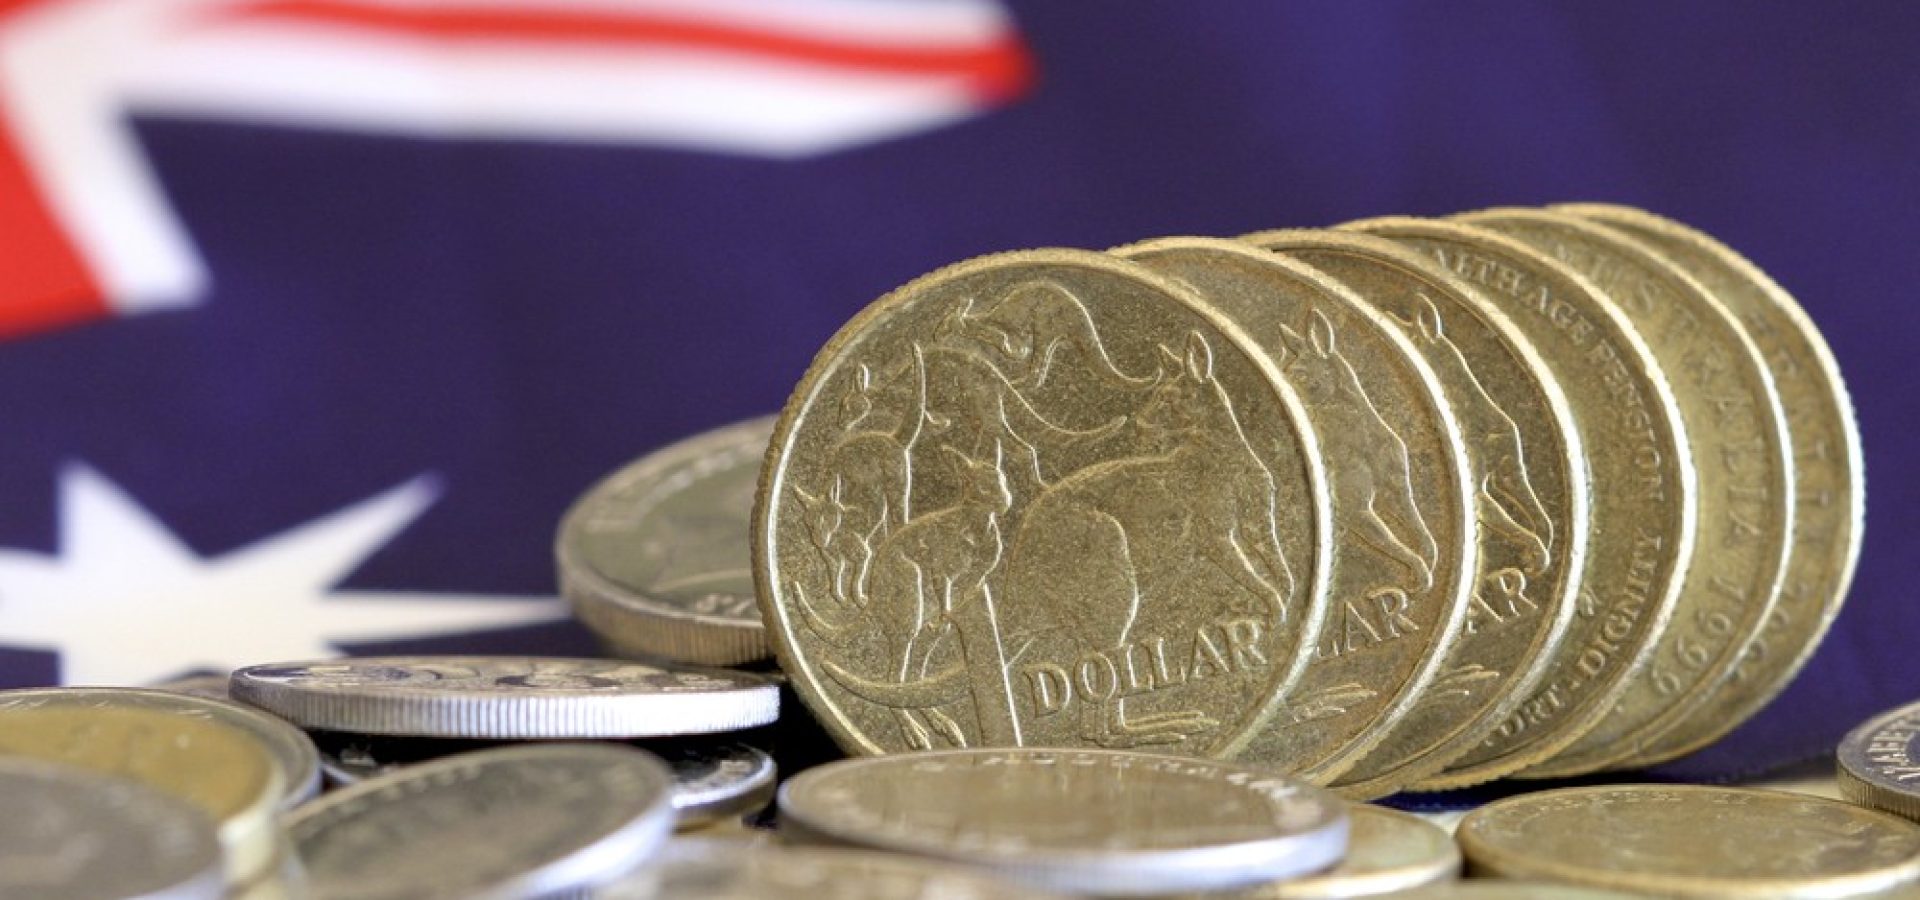 Wibest – Australian Money: Australian dollar coins over the Australian flag.